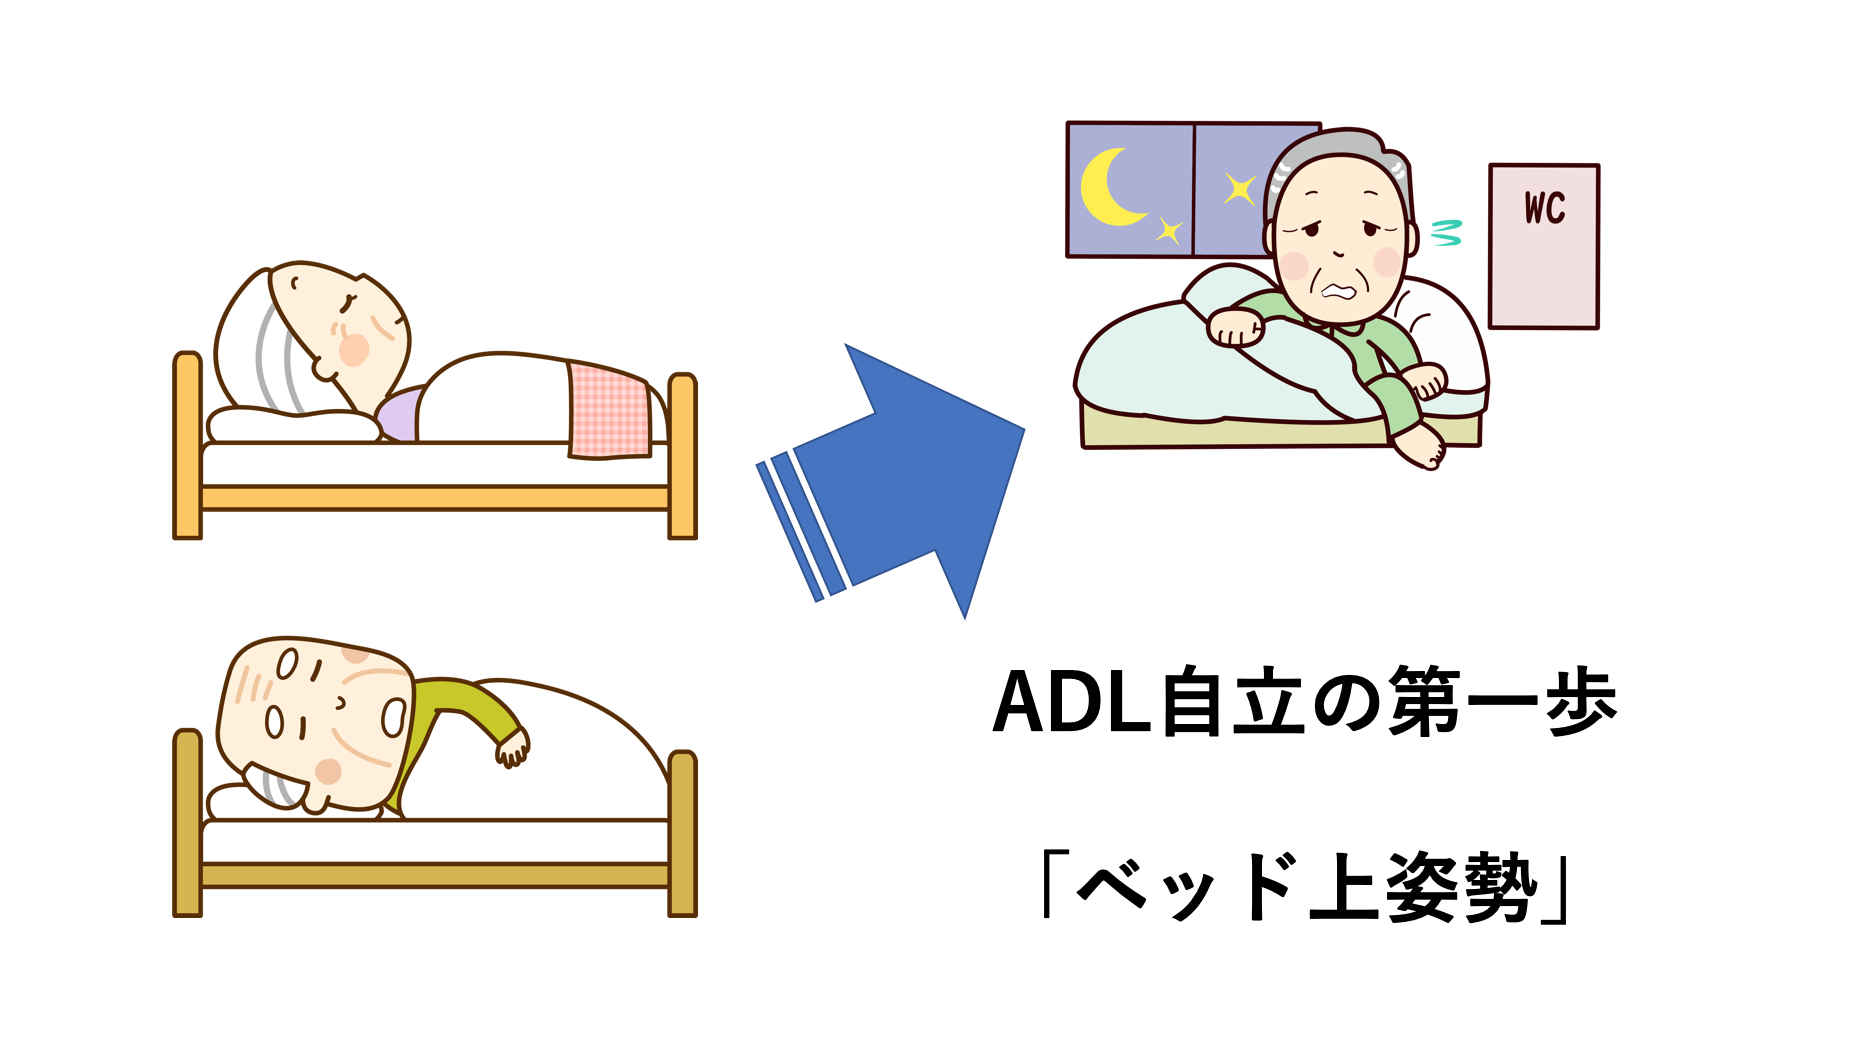 「ADL見てんの？」とは言わせない！「ベッド上姿勢」を利用してADL自立をうまく促そう！